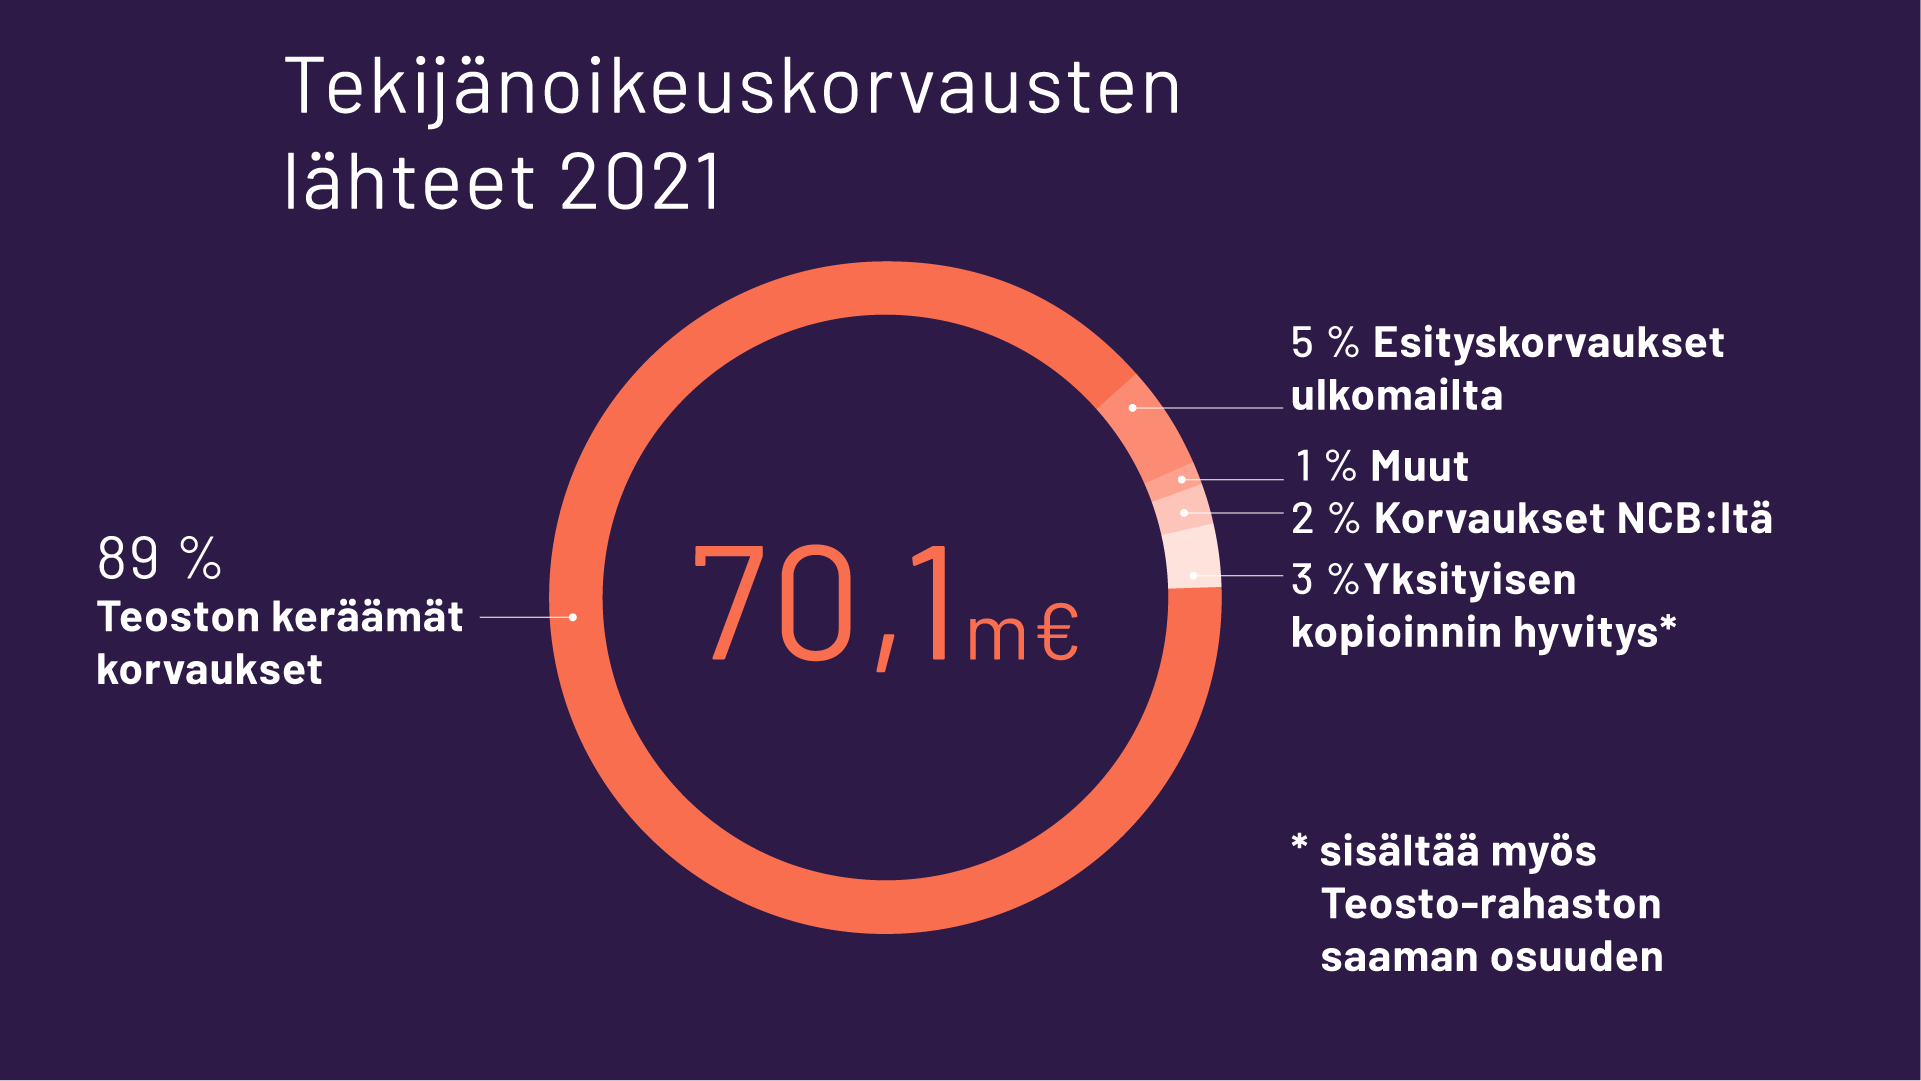 Tekijänoikeuskorvausten lähteet 2021: 70,1 miljoonaa euroa